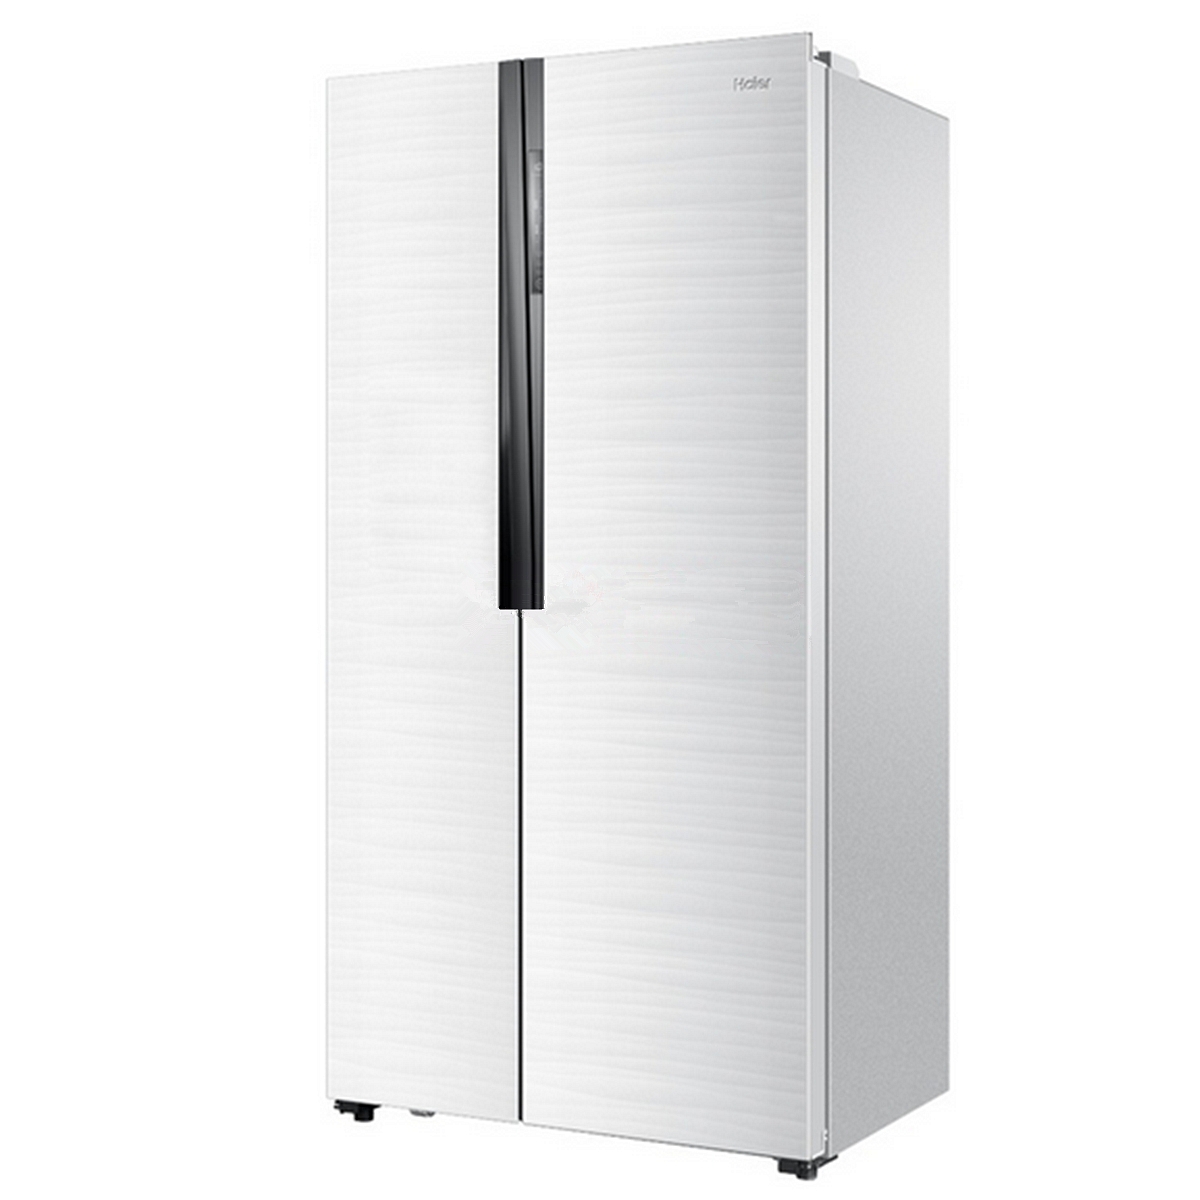 海尔BCD-521WDPW电冰箱(台)